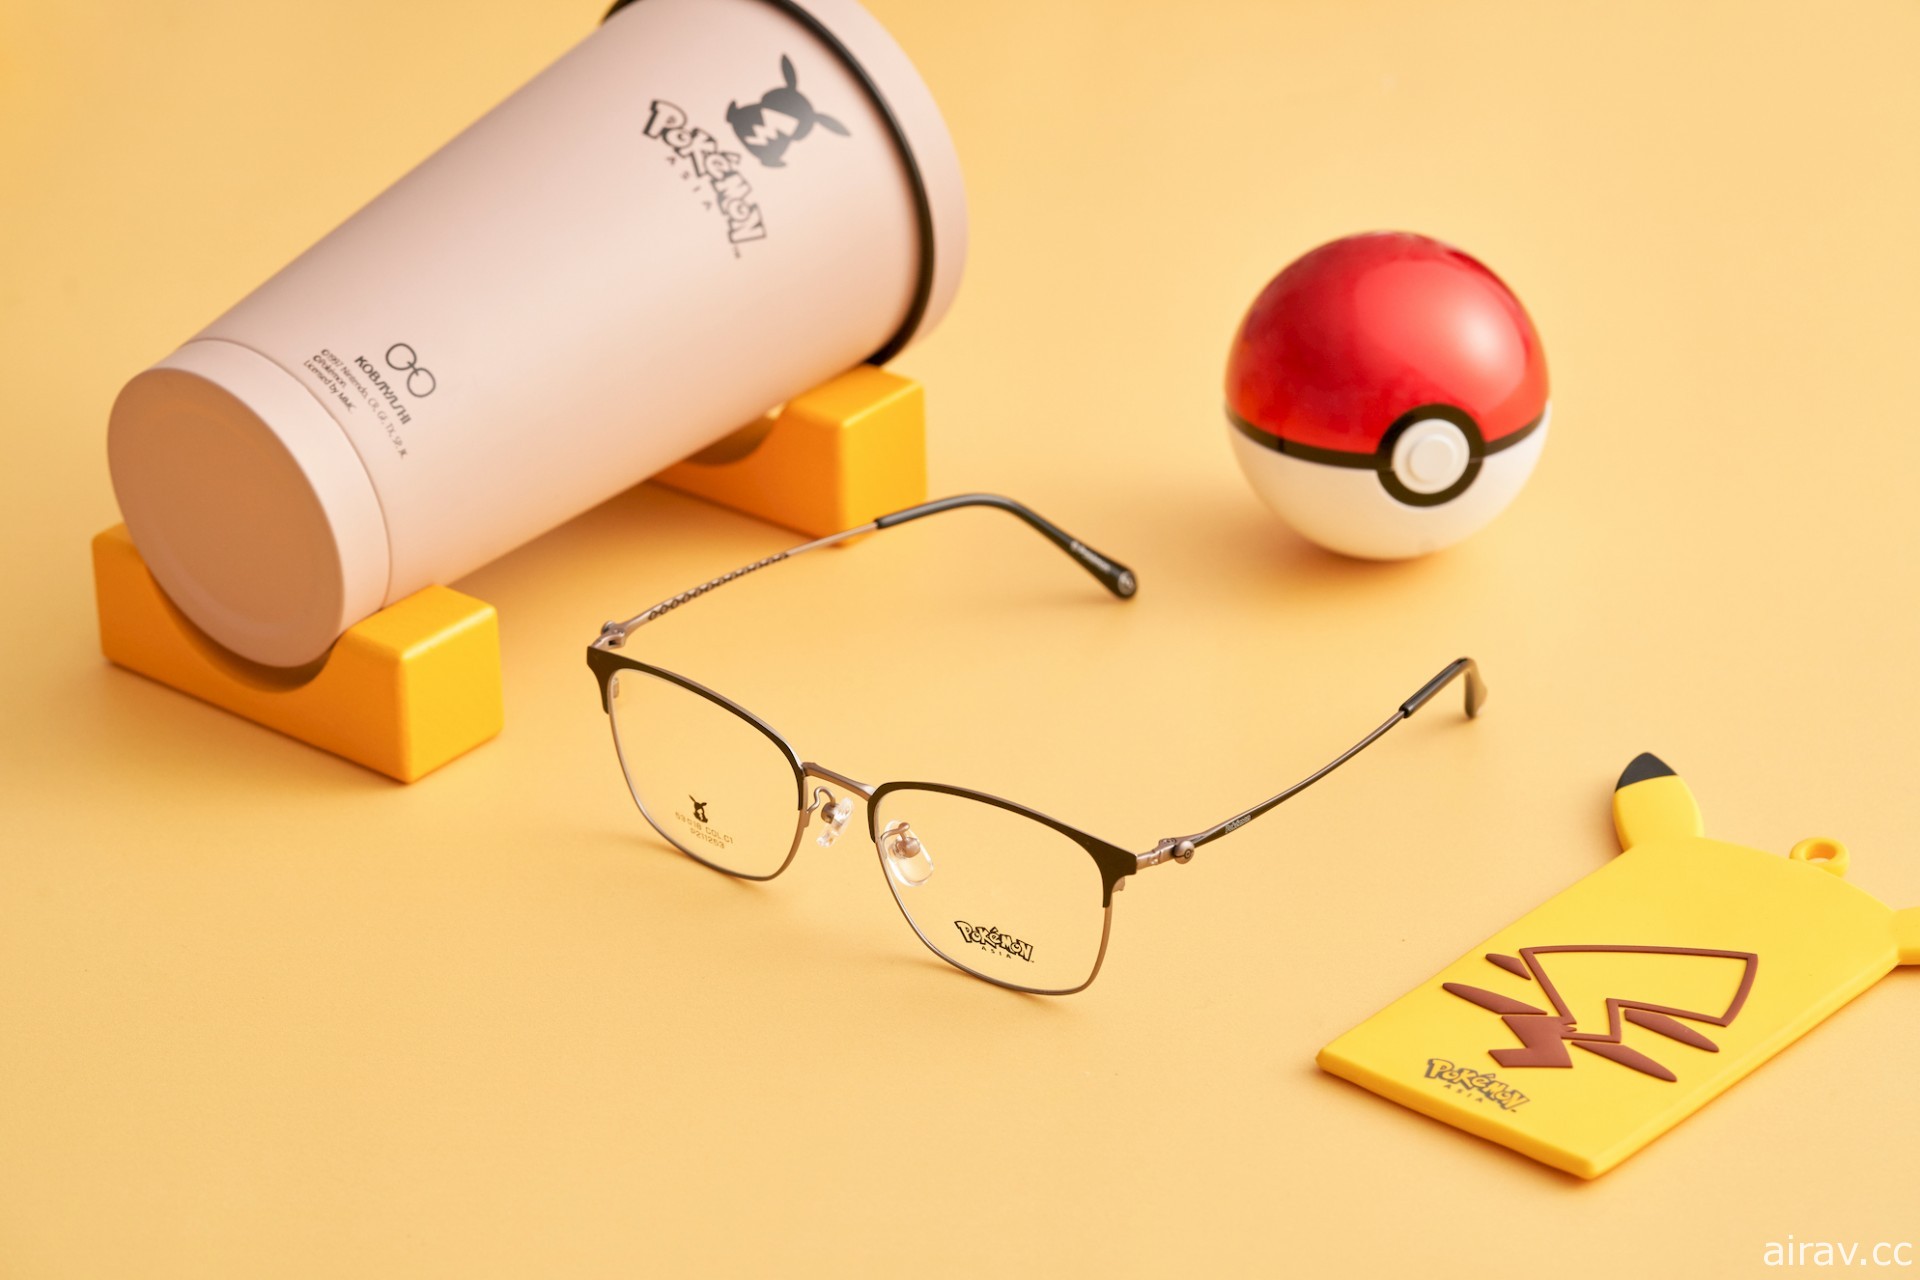 小林眼镜 ×《宝可梦》联名镜架即日起正式推出 皮卡丘眼镜展示架同步上市